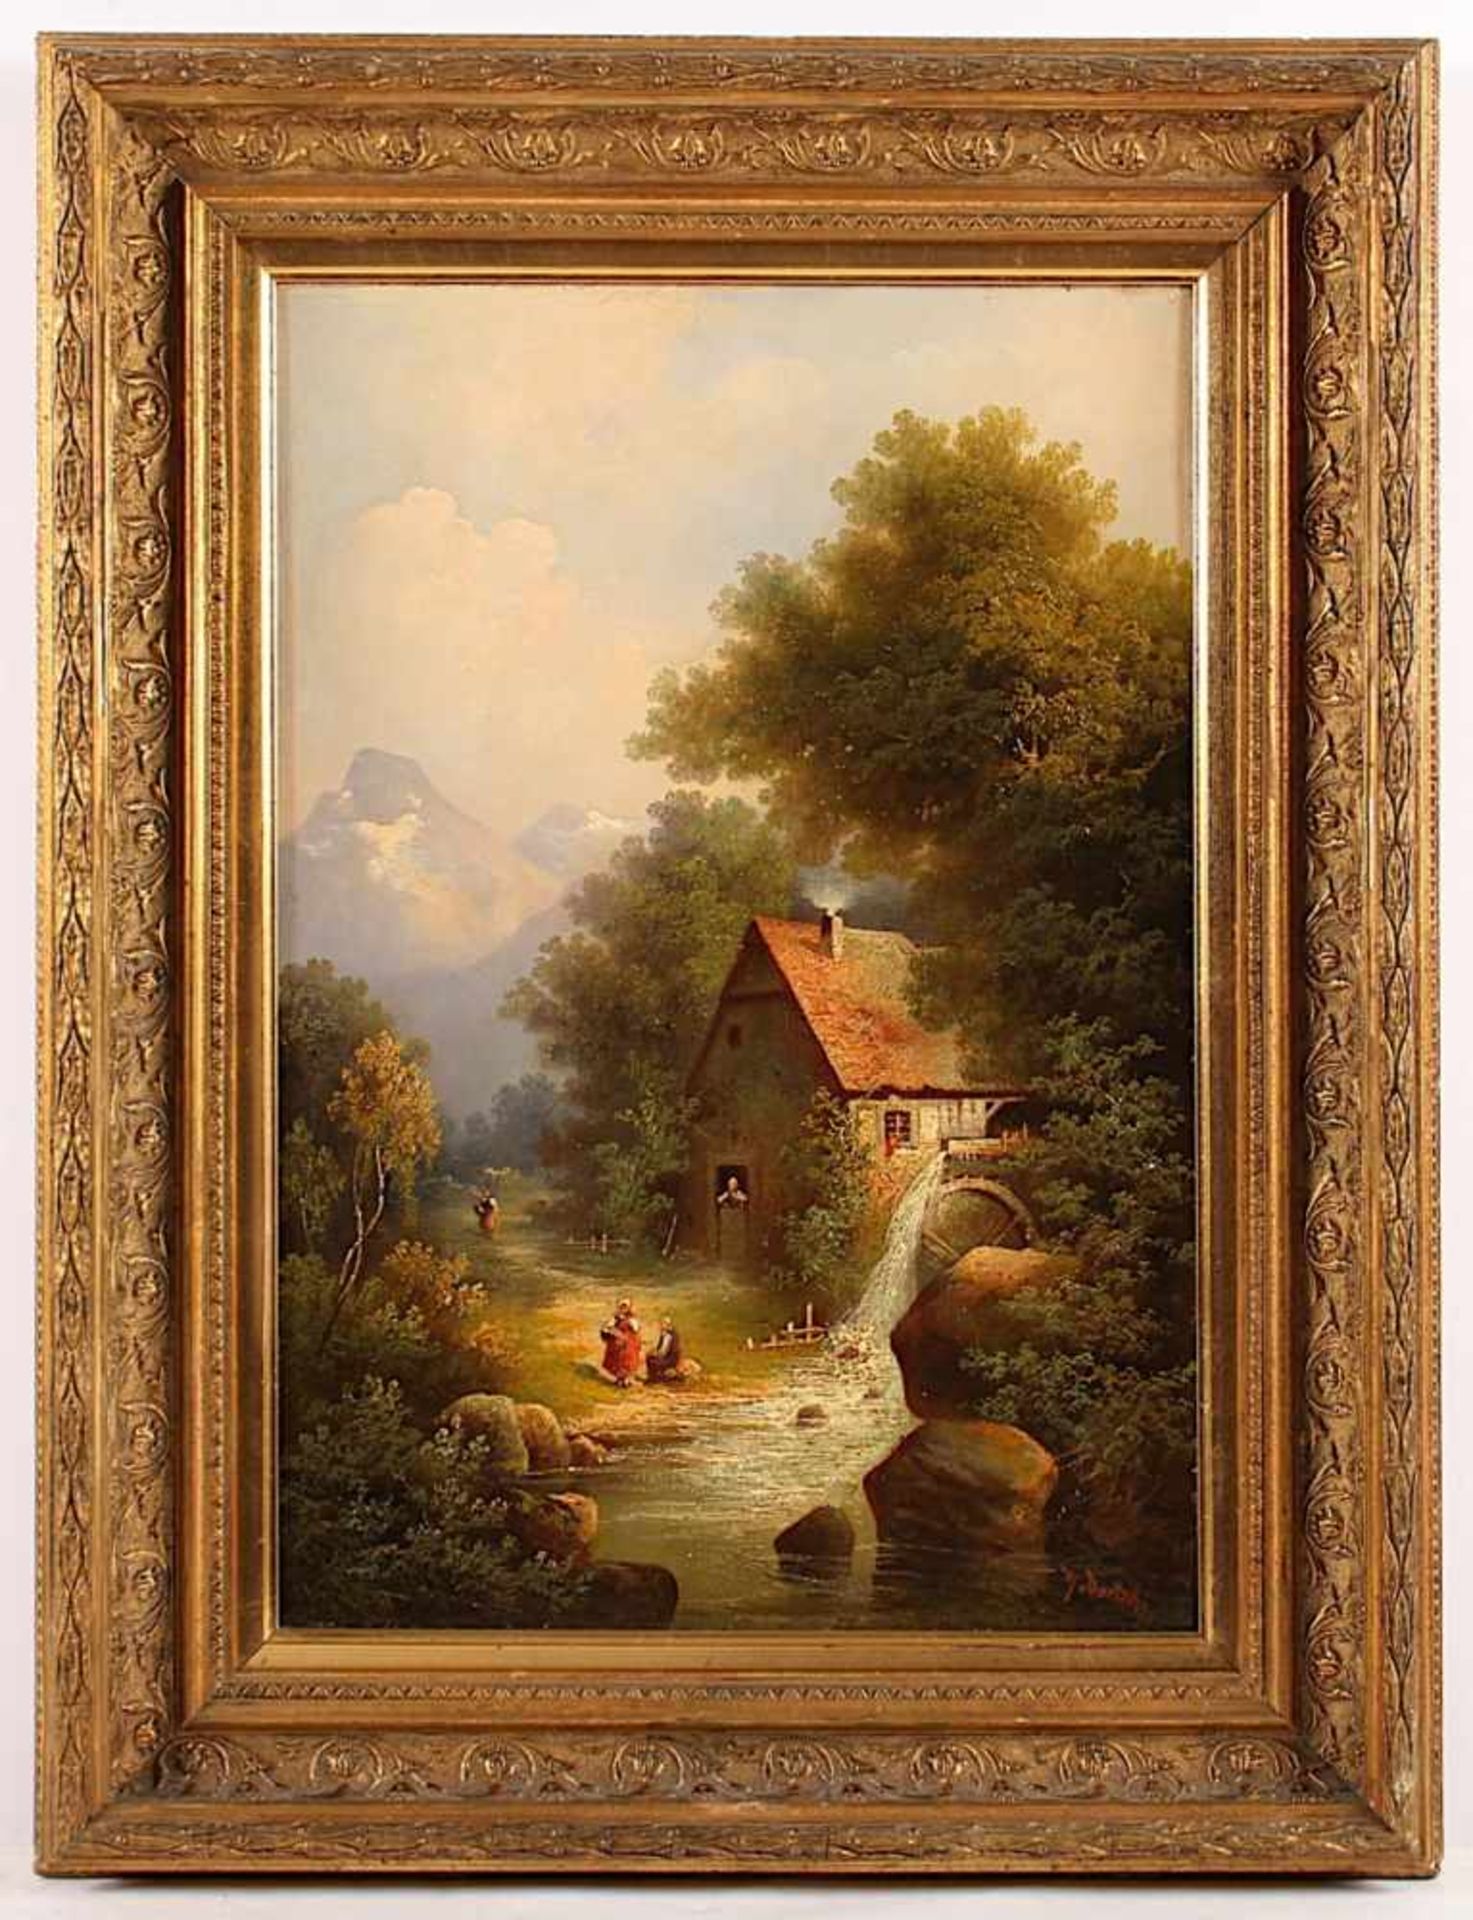 DORTSCHY, M. (Maler um 1900), "Vorgebirgslandschaft mit Mühle", Öl/Lwd., 47 x 32,5, unten rechts